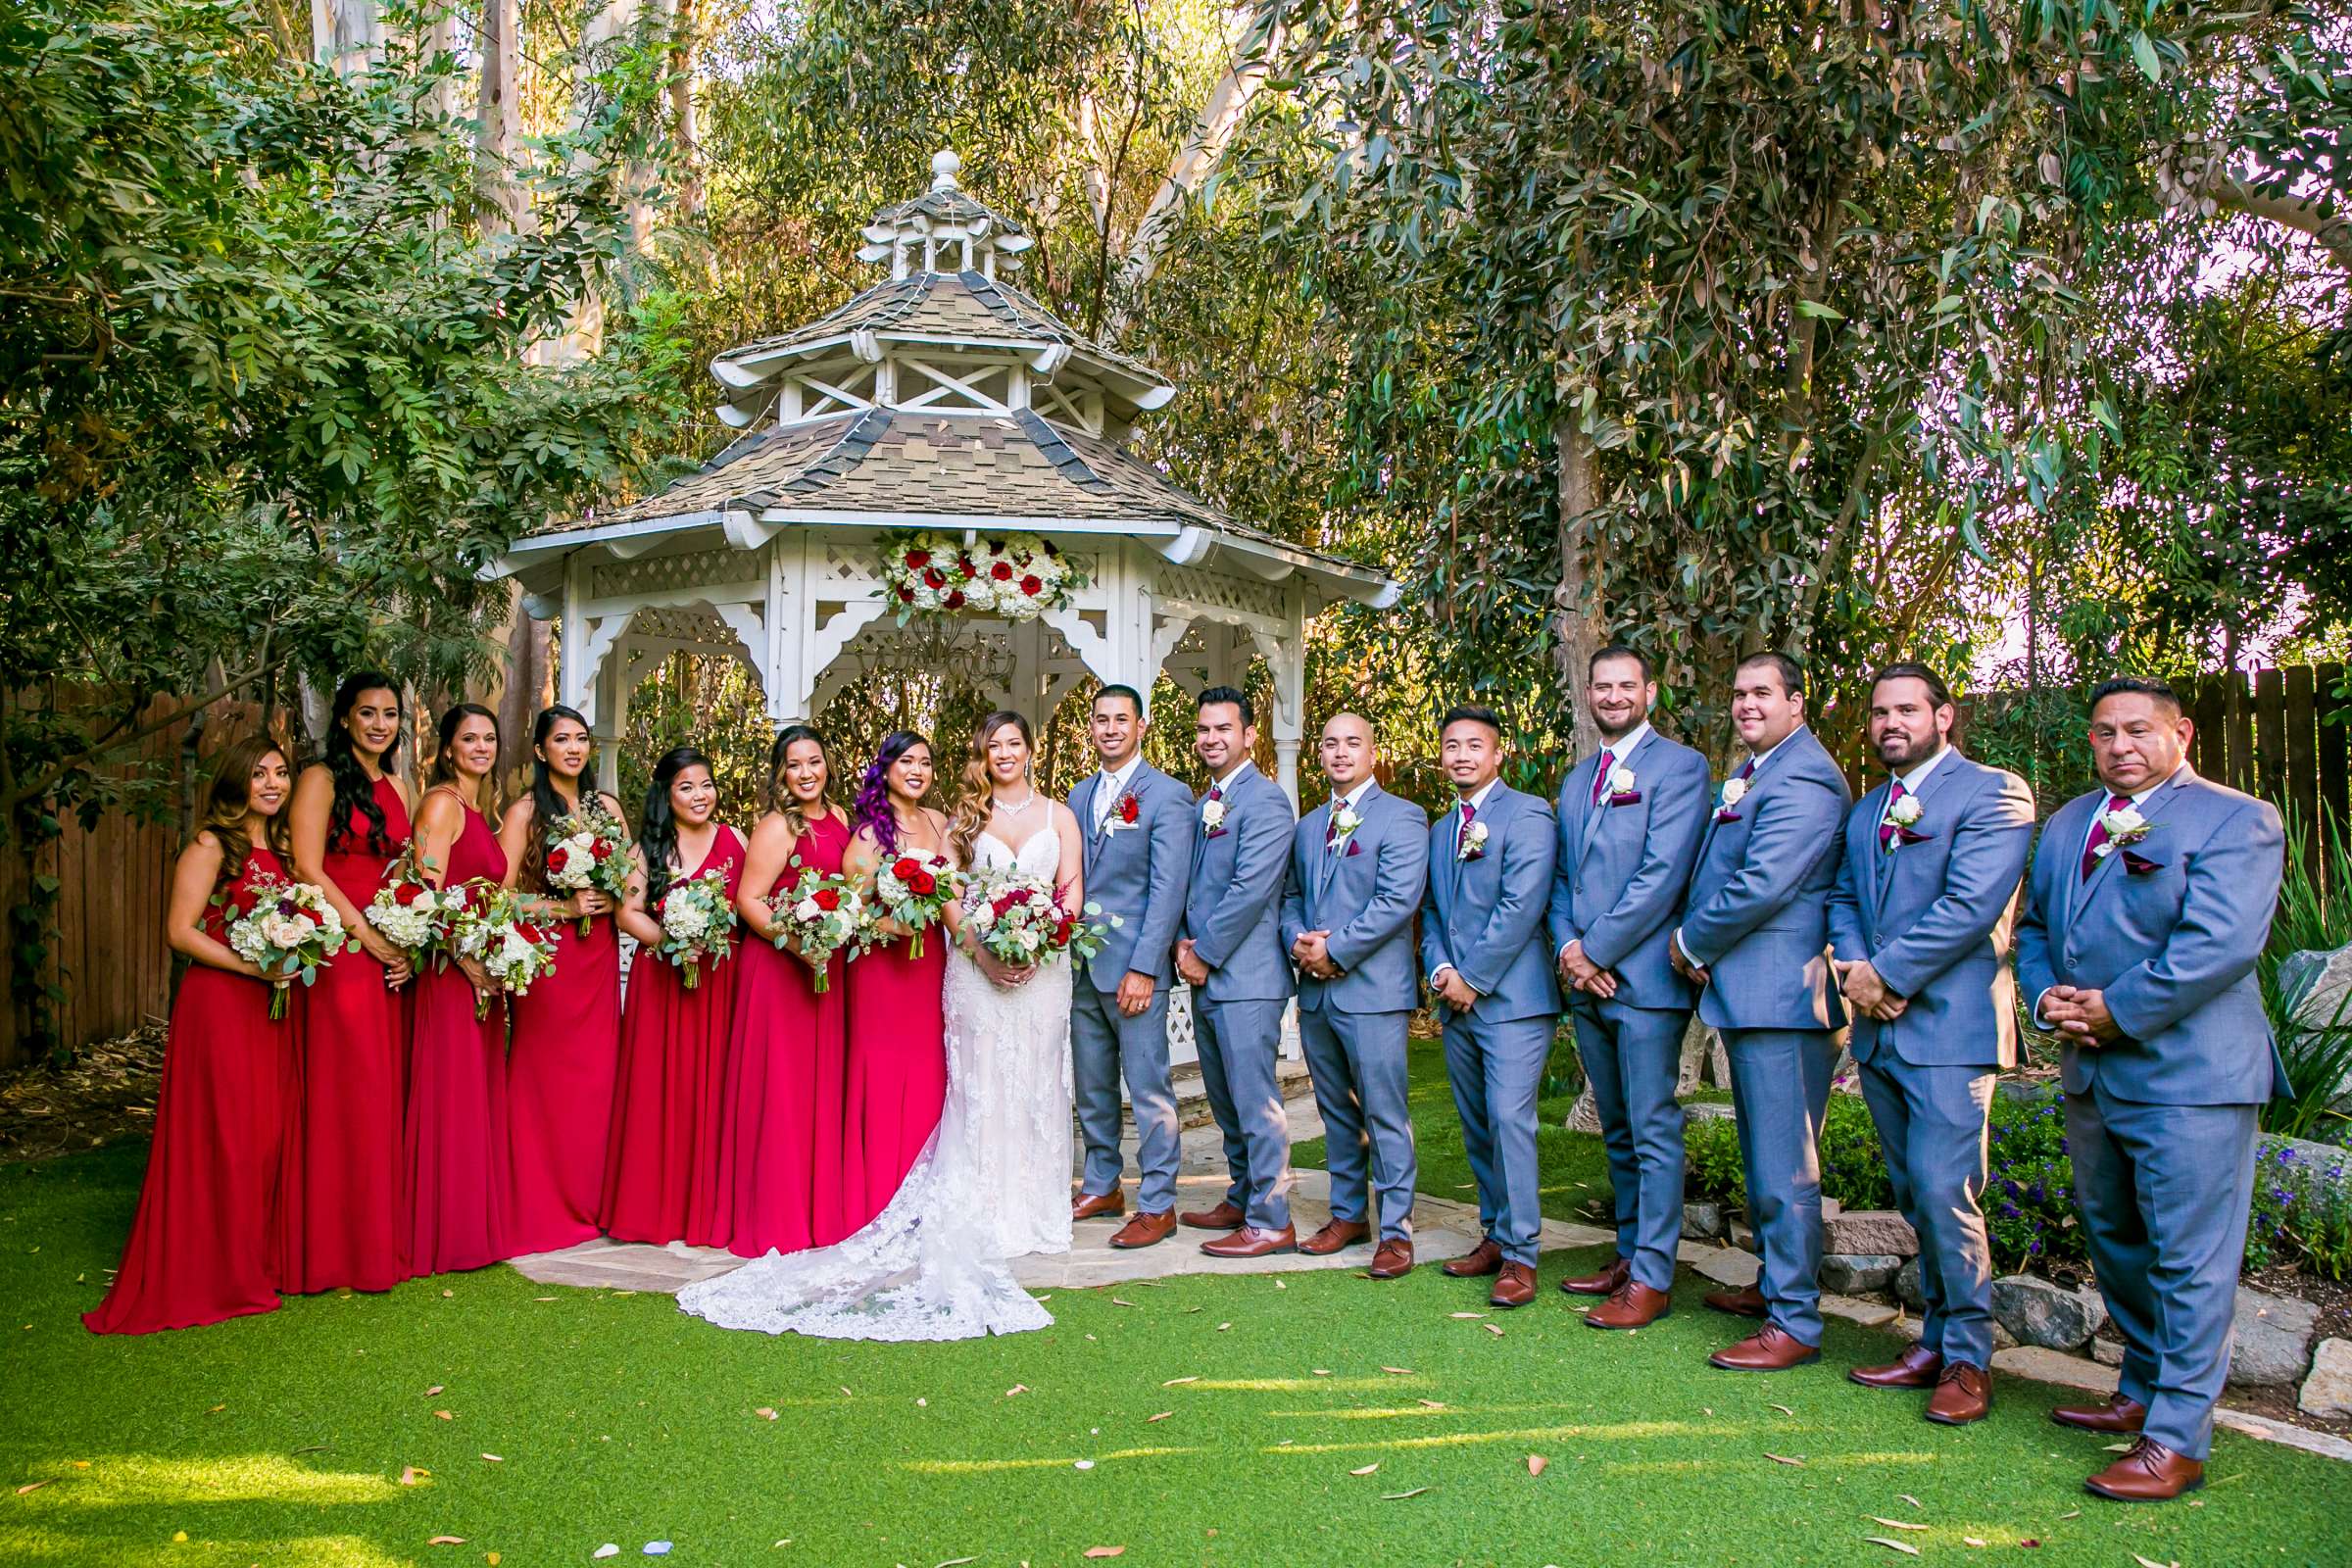 Twin Oaks House & Gardens Wedding Estate Wedding, Merrilynn and Trey Wedding Photo #92 by True Photography